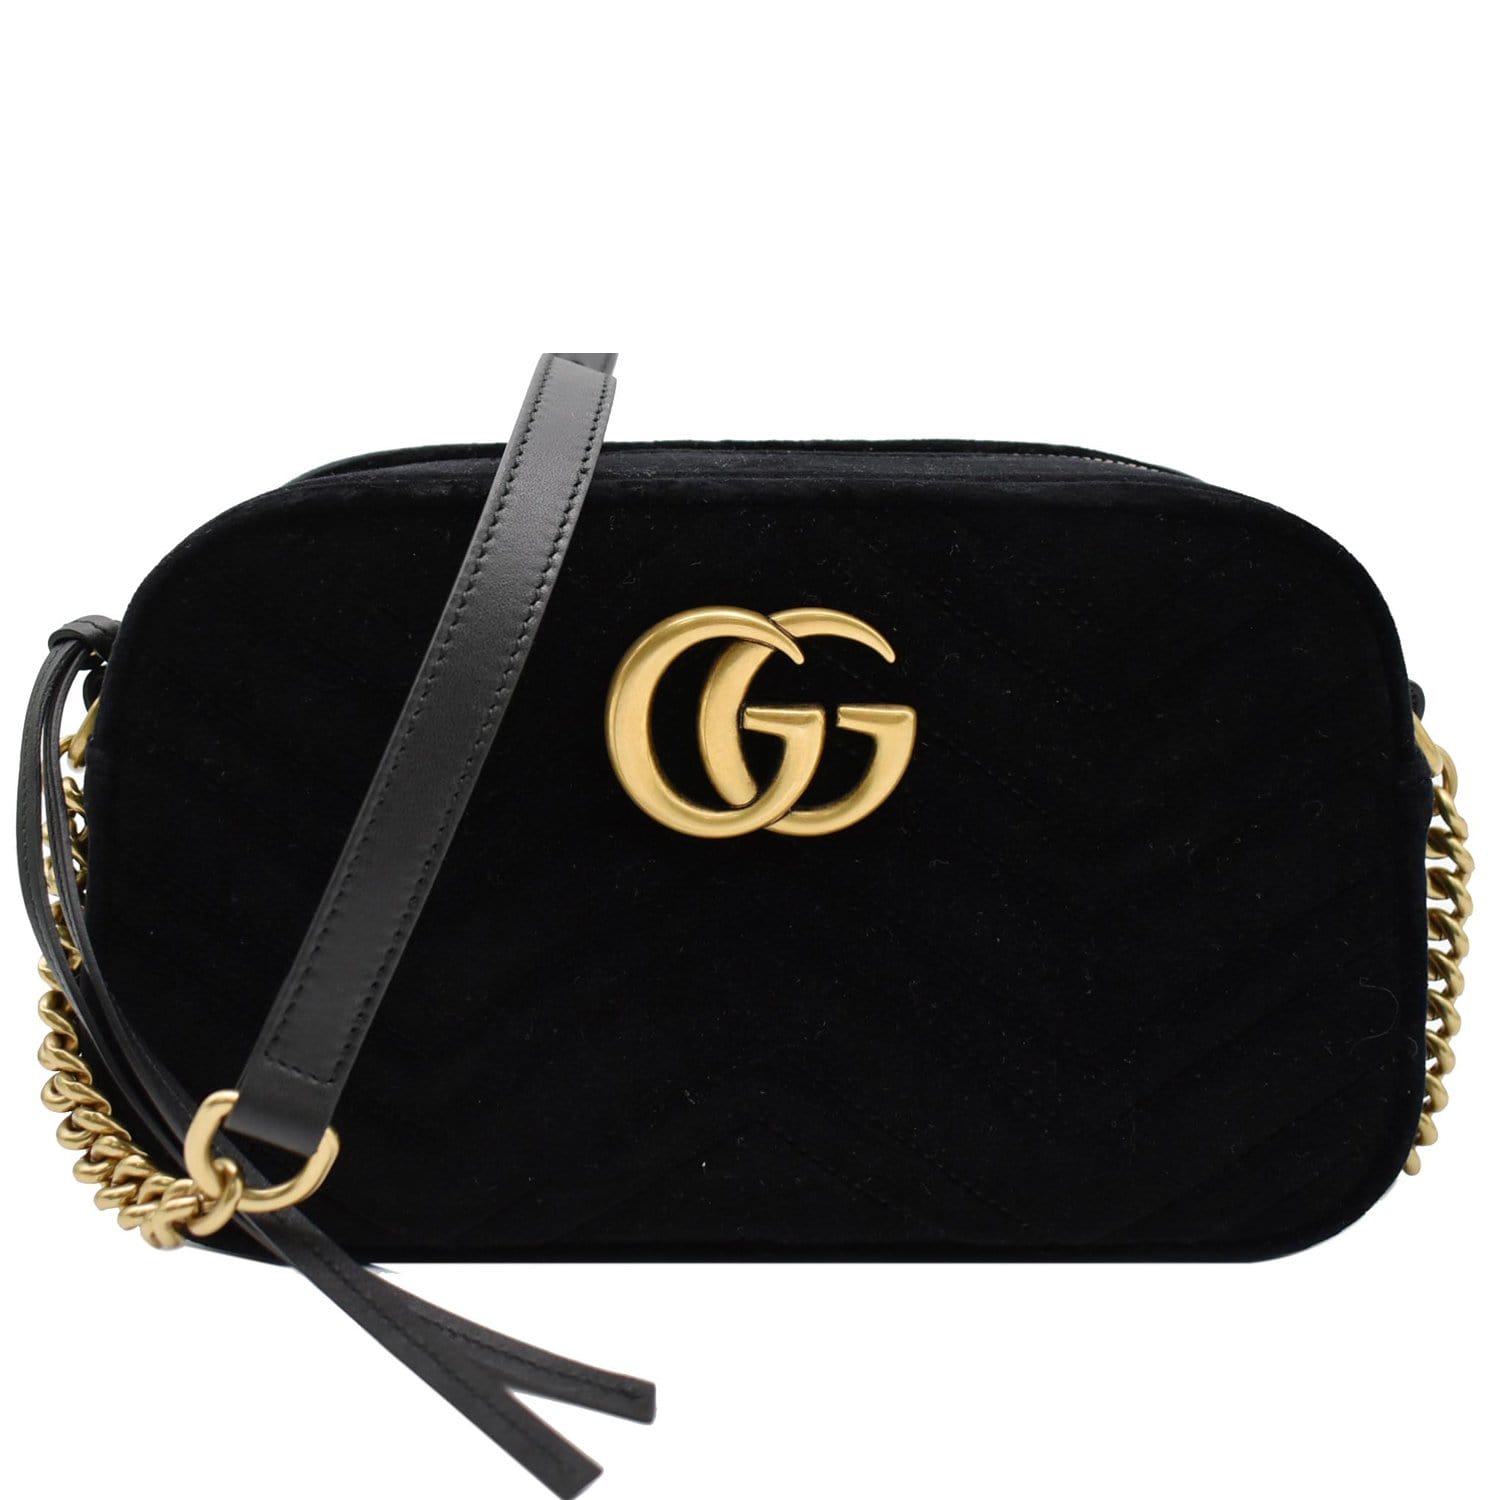 GG Marmont Flap velvet crossbody bag